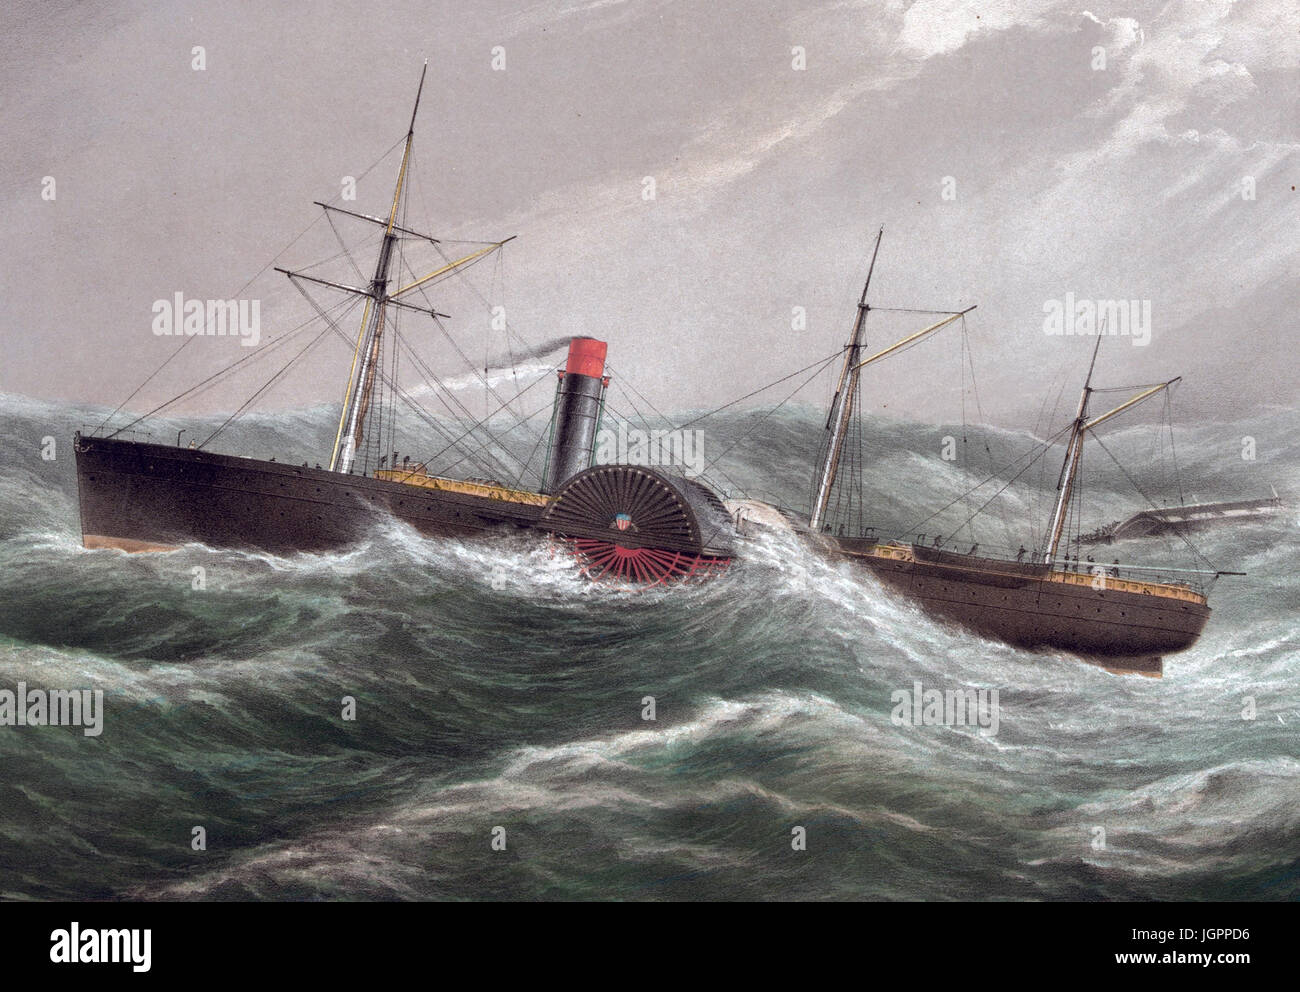 Bateau à vapeur SS PACIFIQUE vers 1850. Un 1853 imprimer en montrant son sauvetage de l'équipage de la barque Jesse Stevens le 4 décembre 1852. Le Pacifique a disparu sans laisser de trace en janvier 1856 après avoir quitté Liverpool pour New York. Banque D'Images